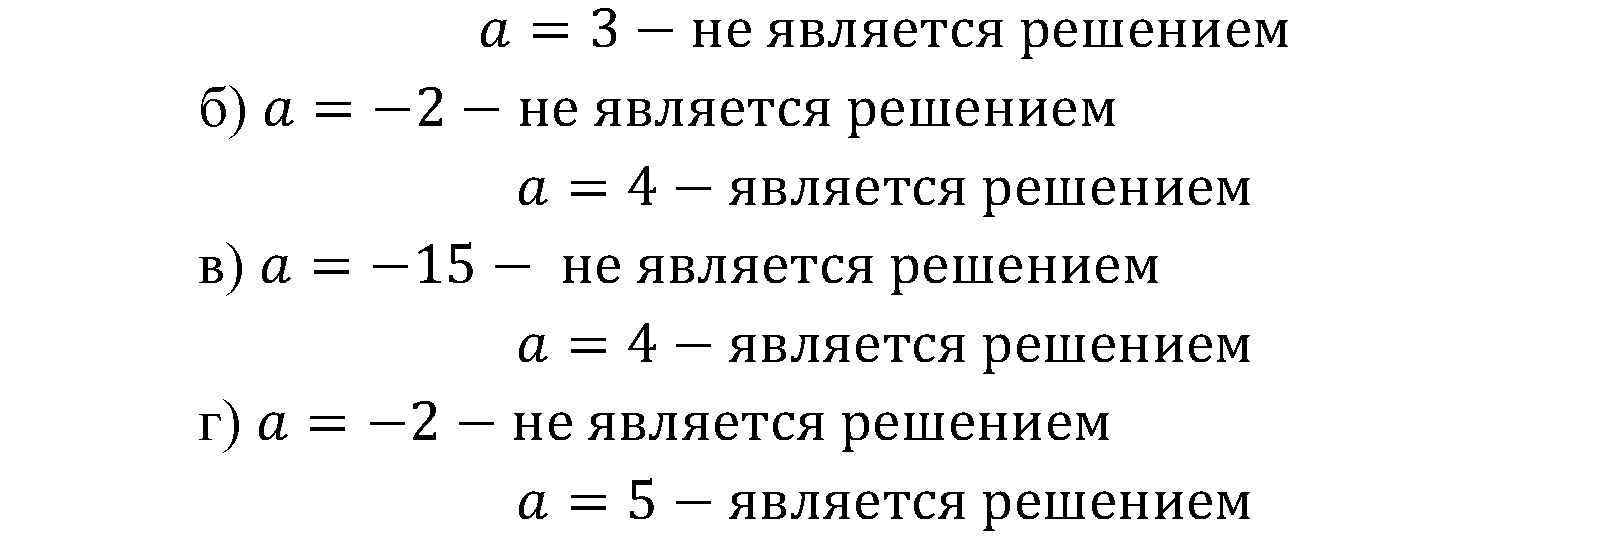 задача №1.1 алгебра 9 класс Мордкович